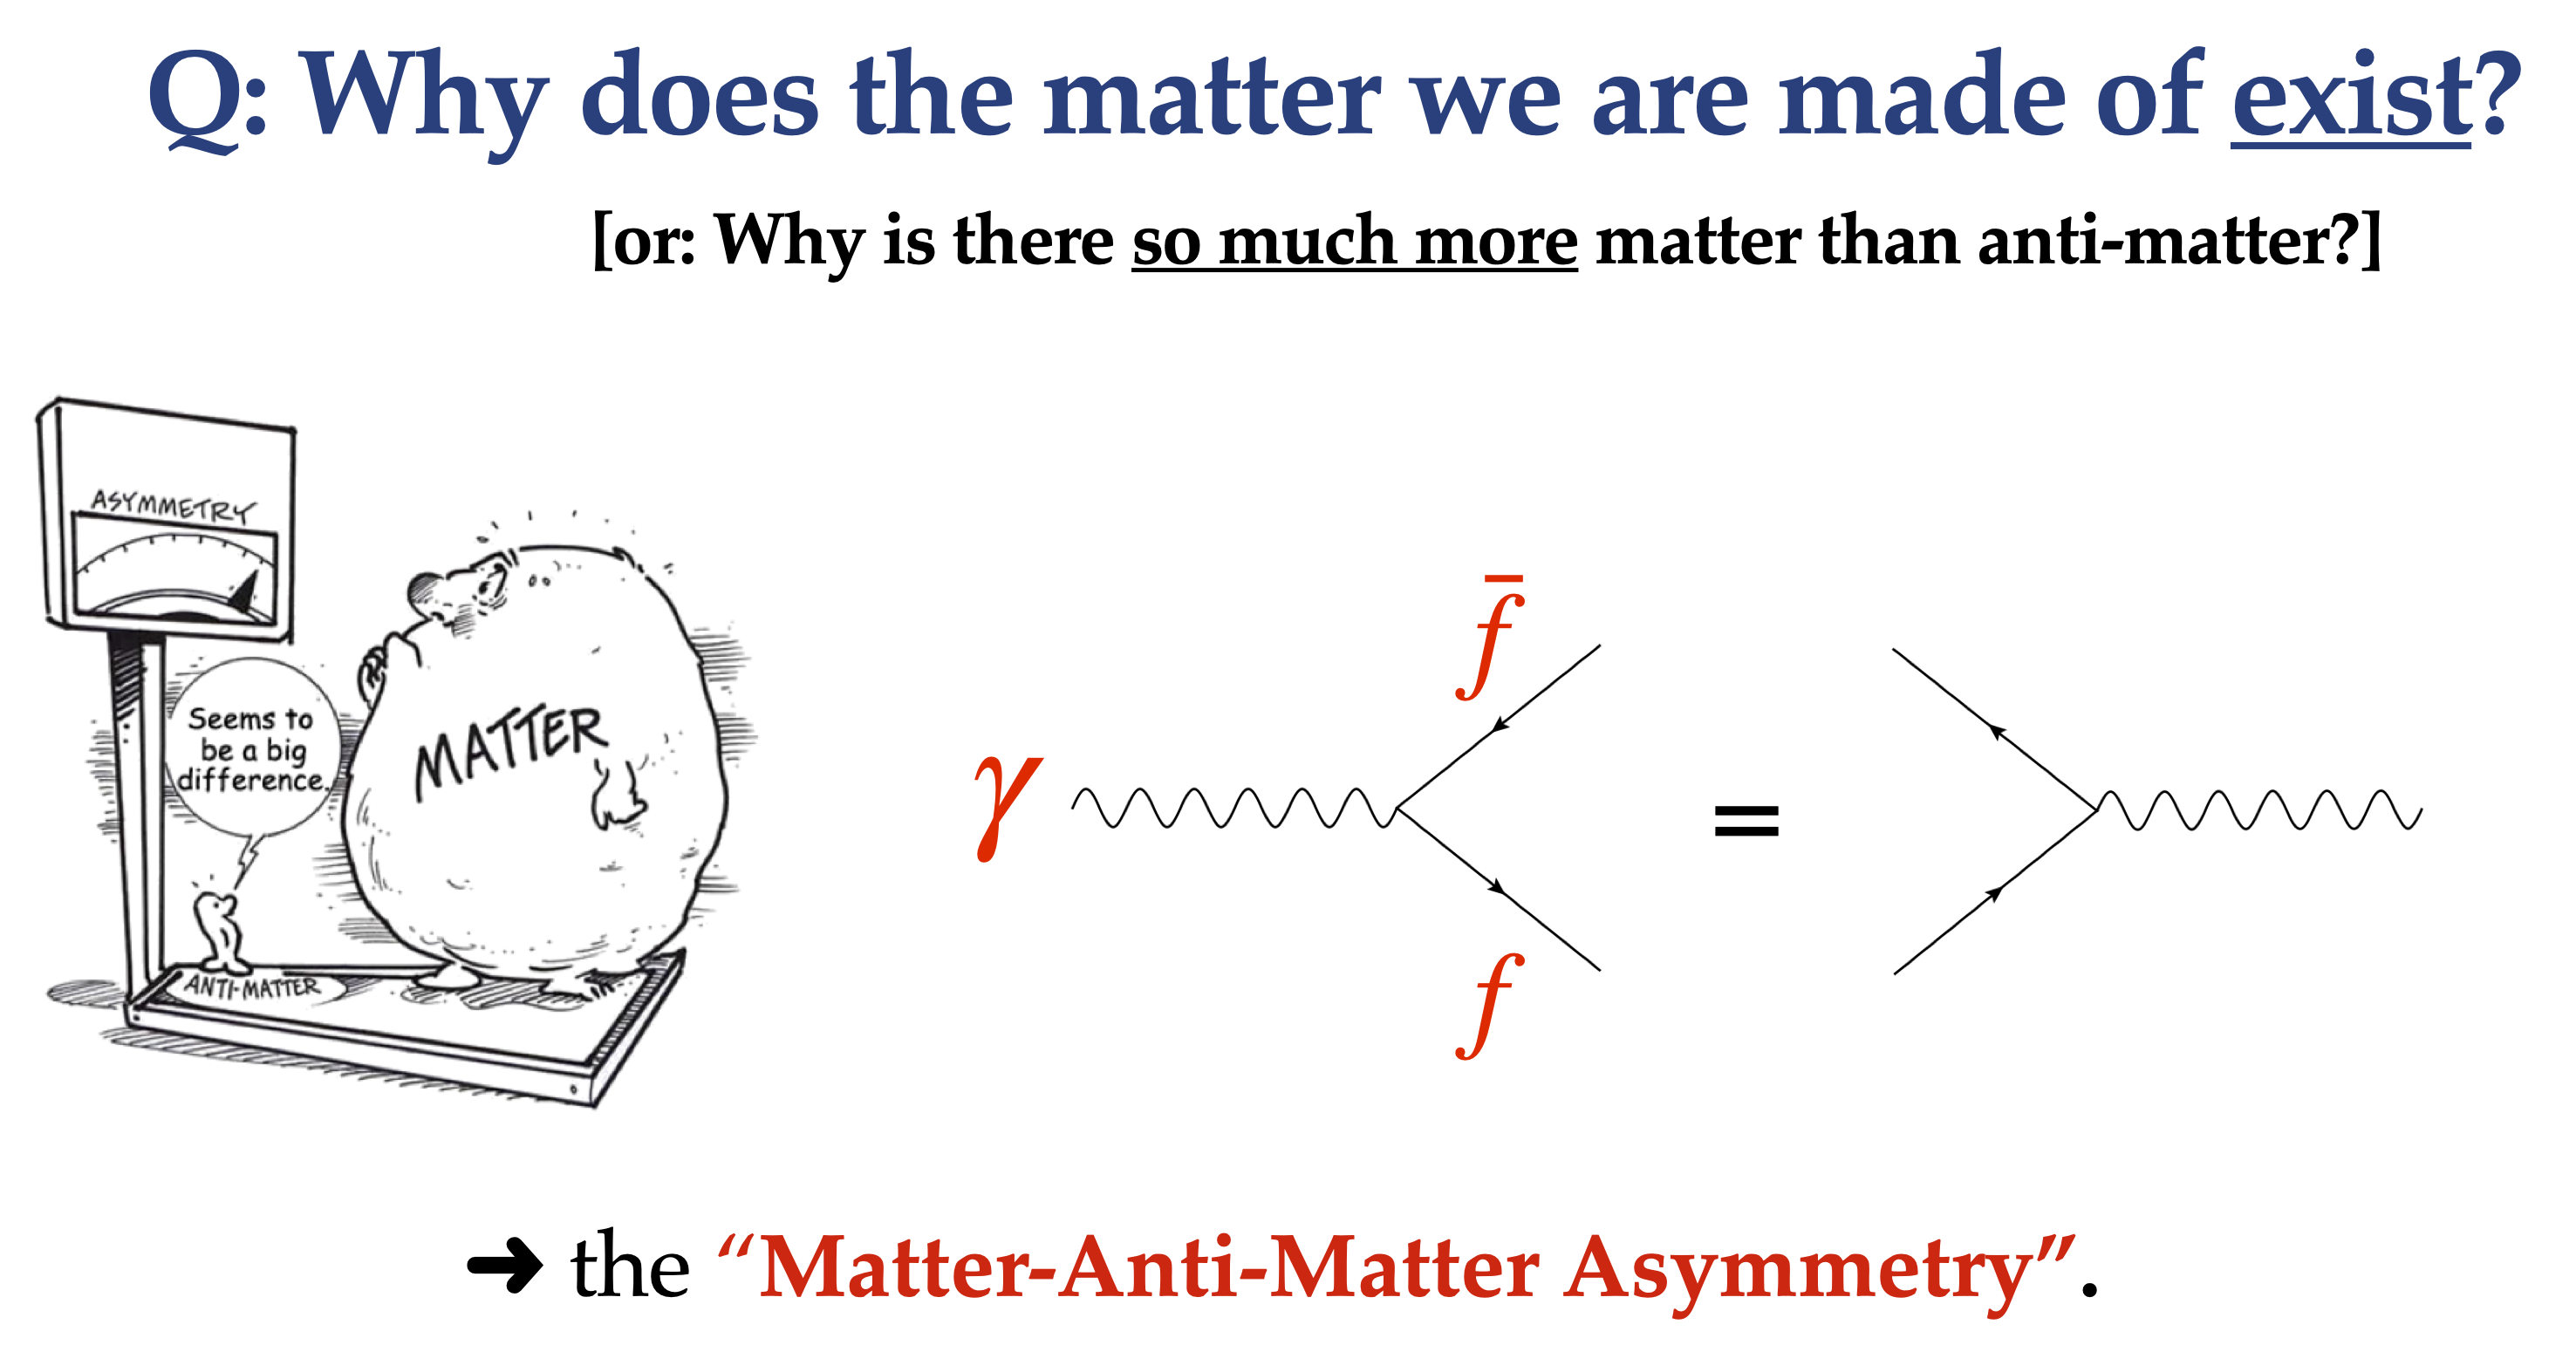 The Matter-Anti-Matter Asymmetry